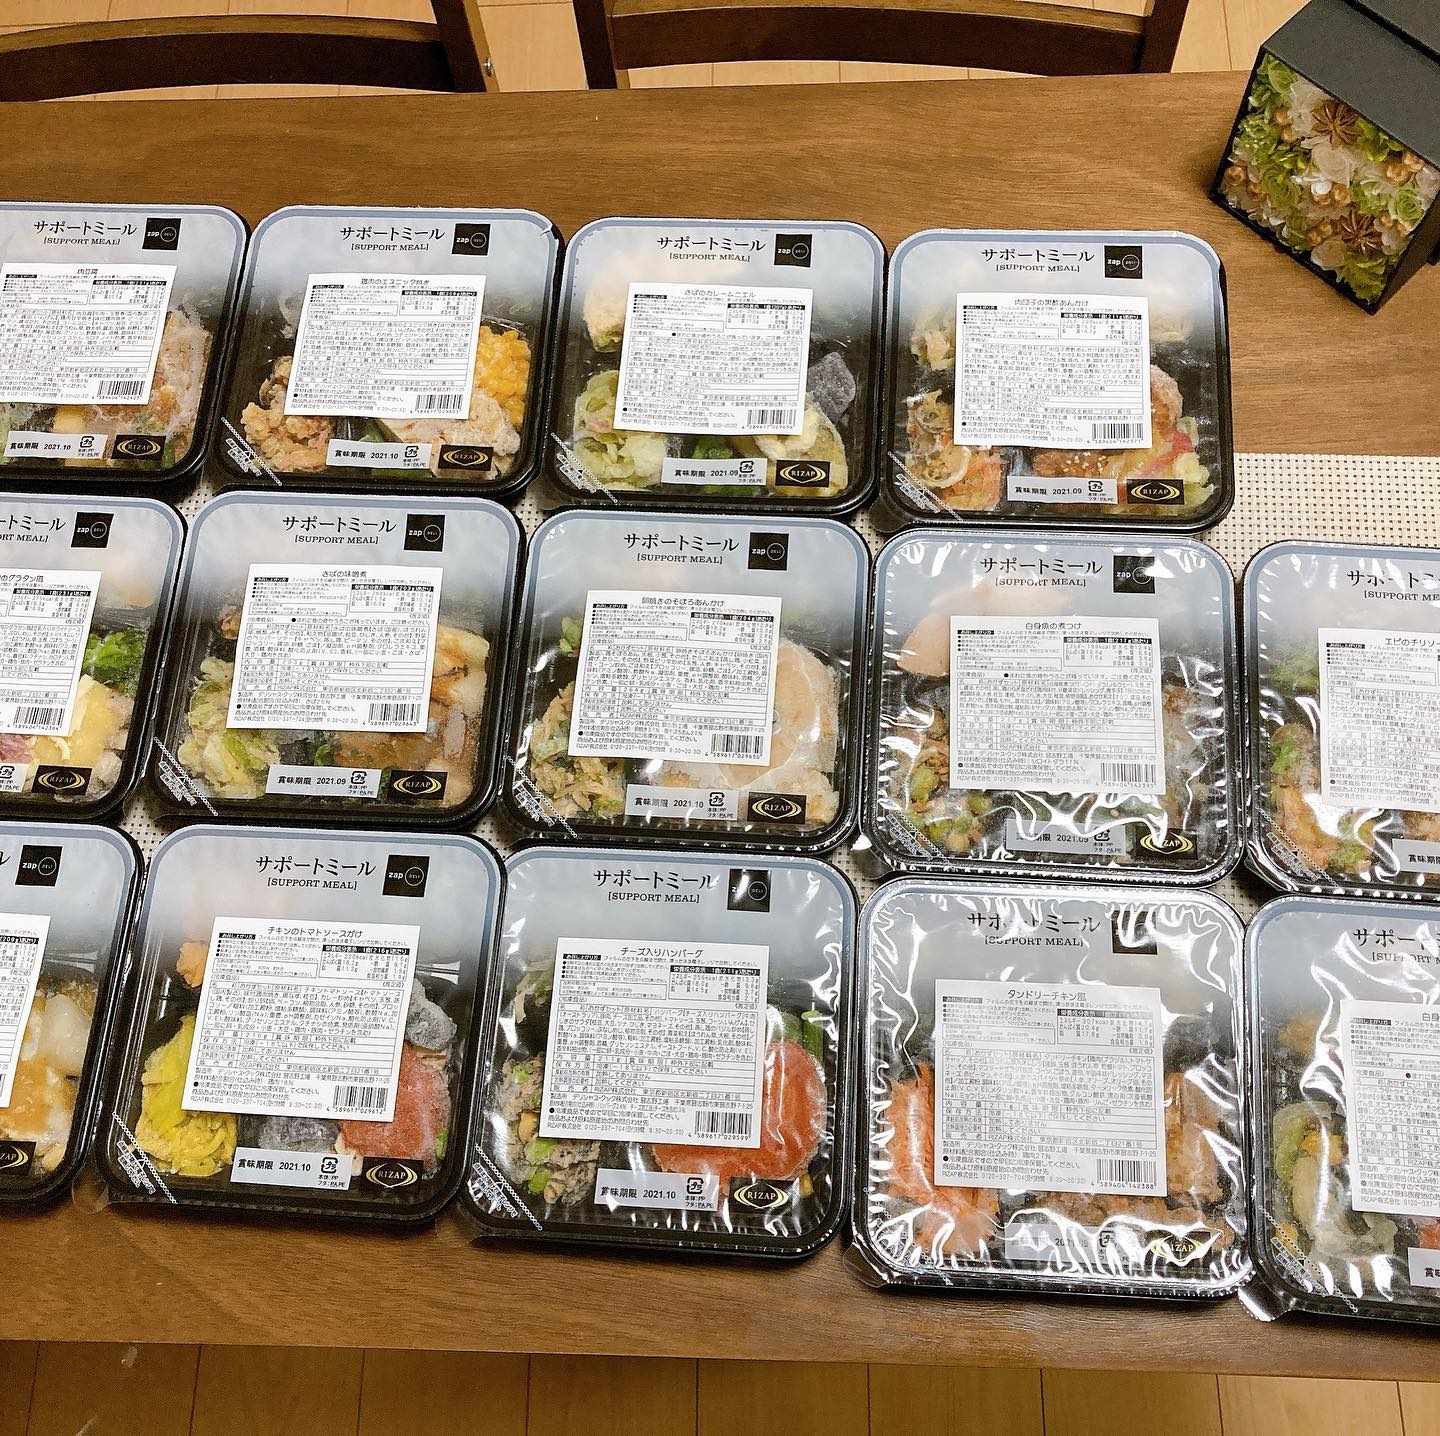 ライザップ（RIZAP）で食事制限してダイエットする際に使う宅食用ボディメイク冷凍弁当「サポートミール」（健康食品）の各メニューが並んでいる写真